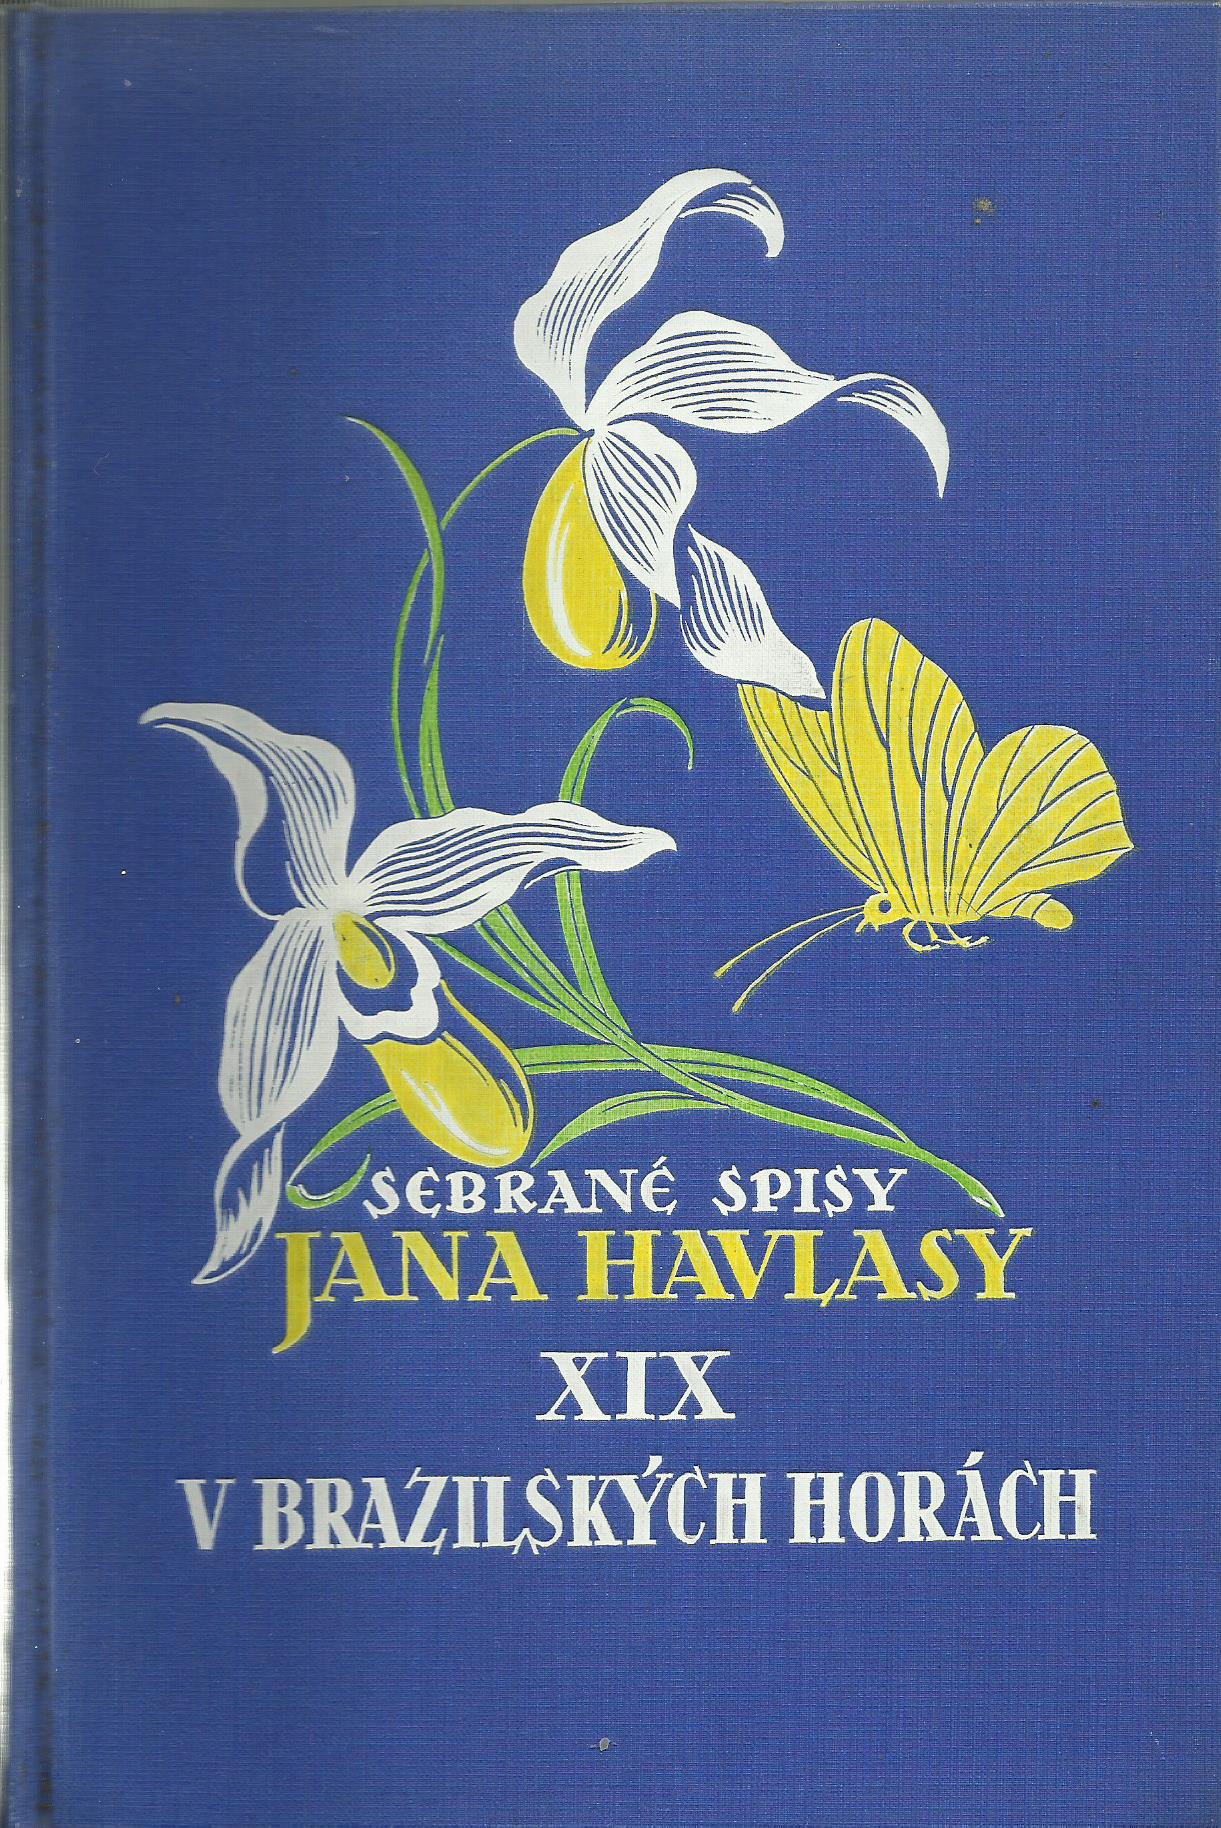 Sebrané spisy Jana Hlavase XIX - V Brazilských horách